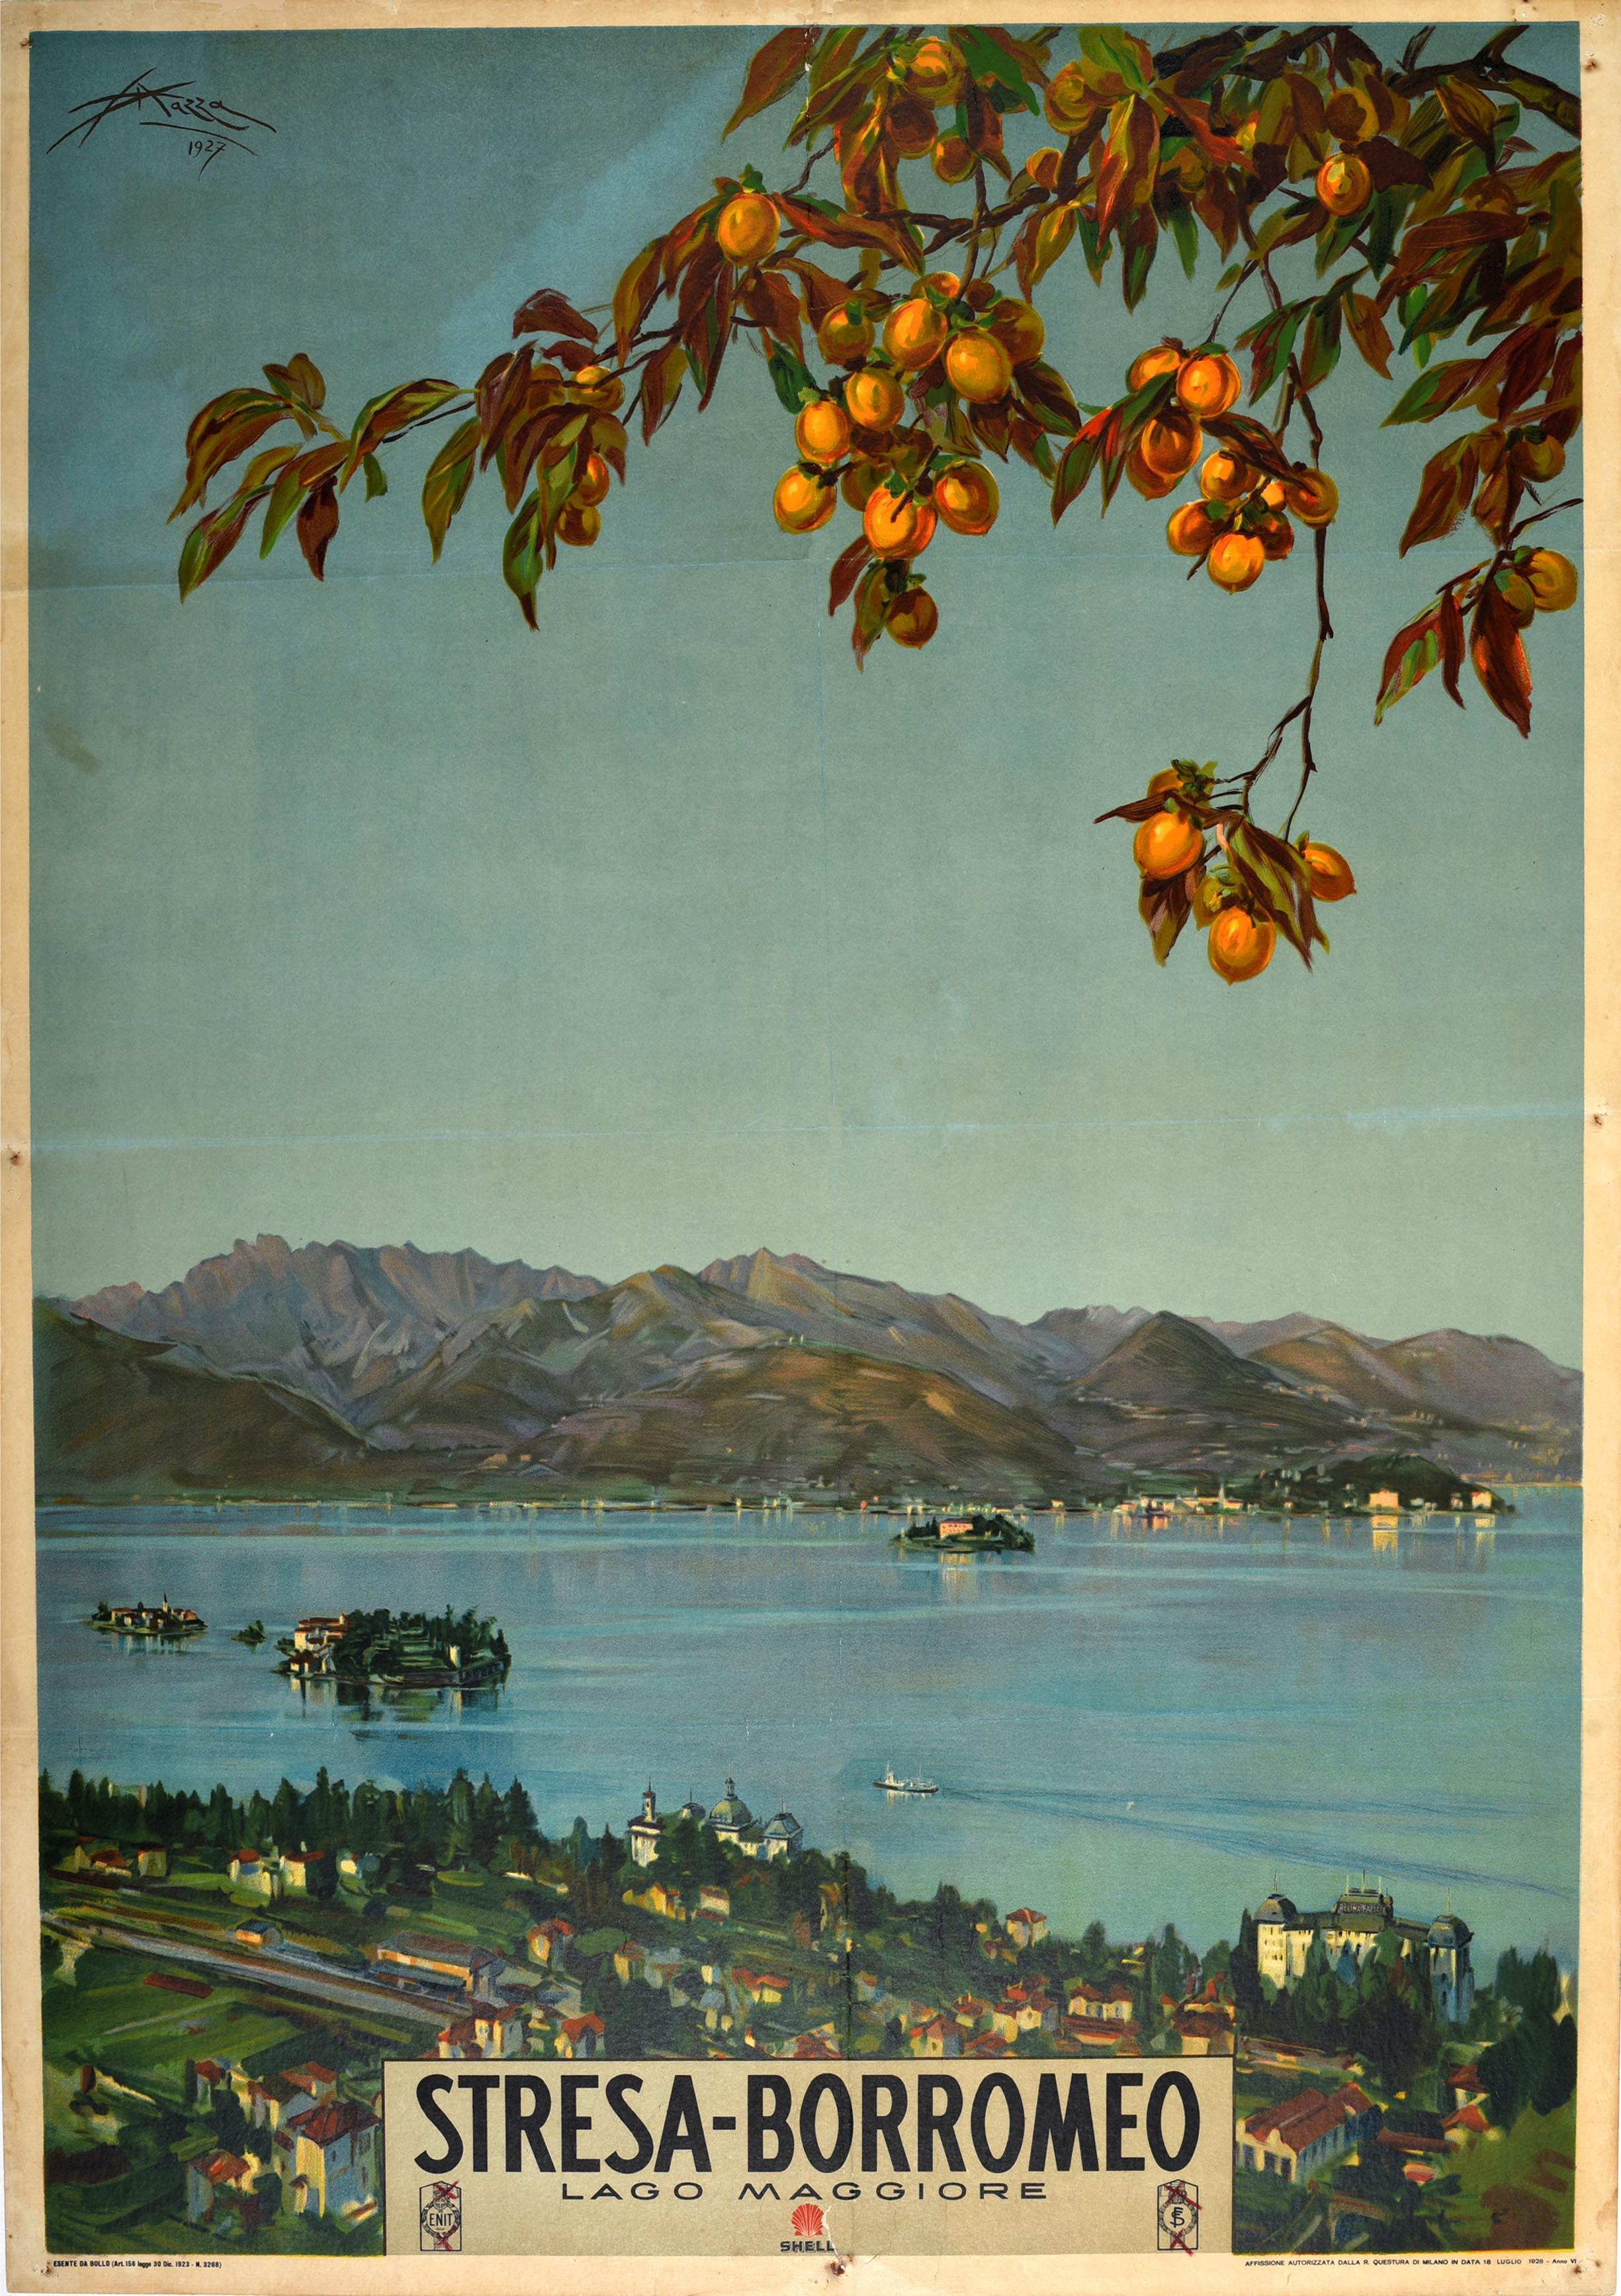 Aldo Mazza Print - Original Vintage Italy Travel Poster Stresa Borromeo Lake Maggiore Islands ENIT